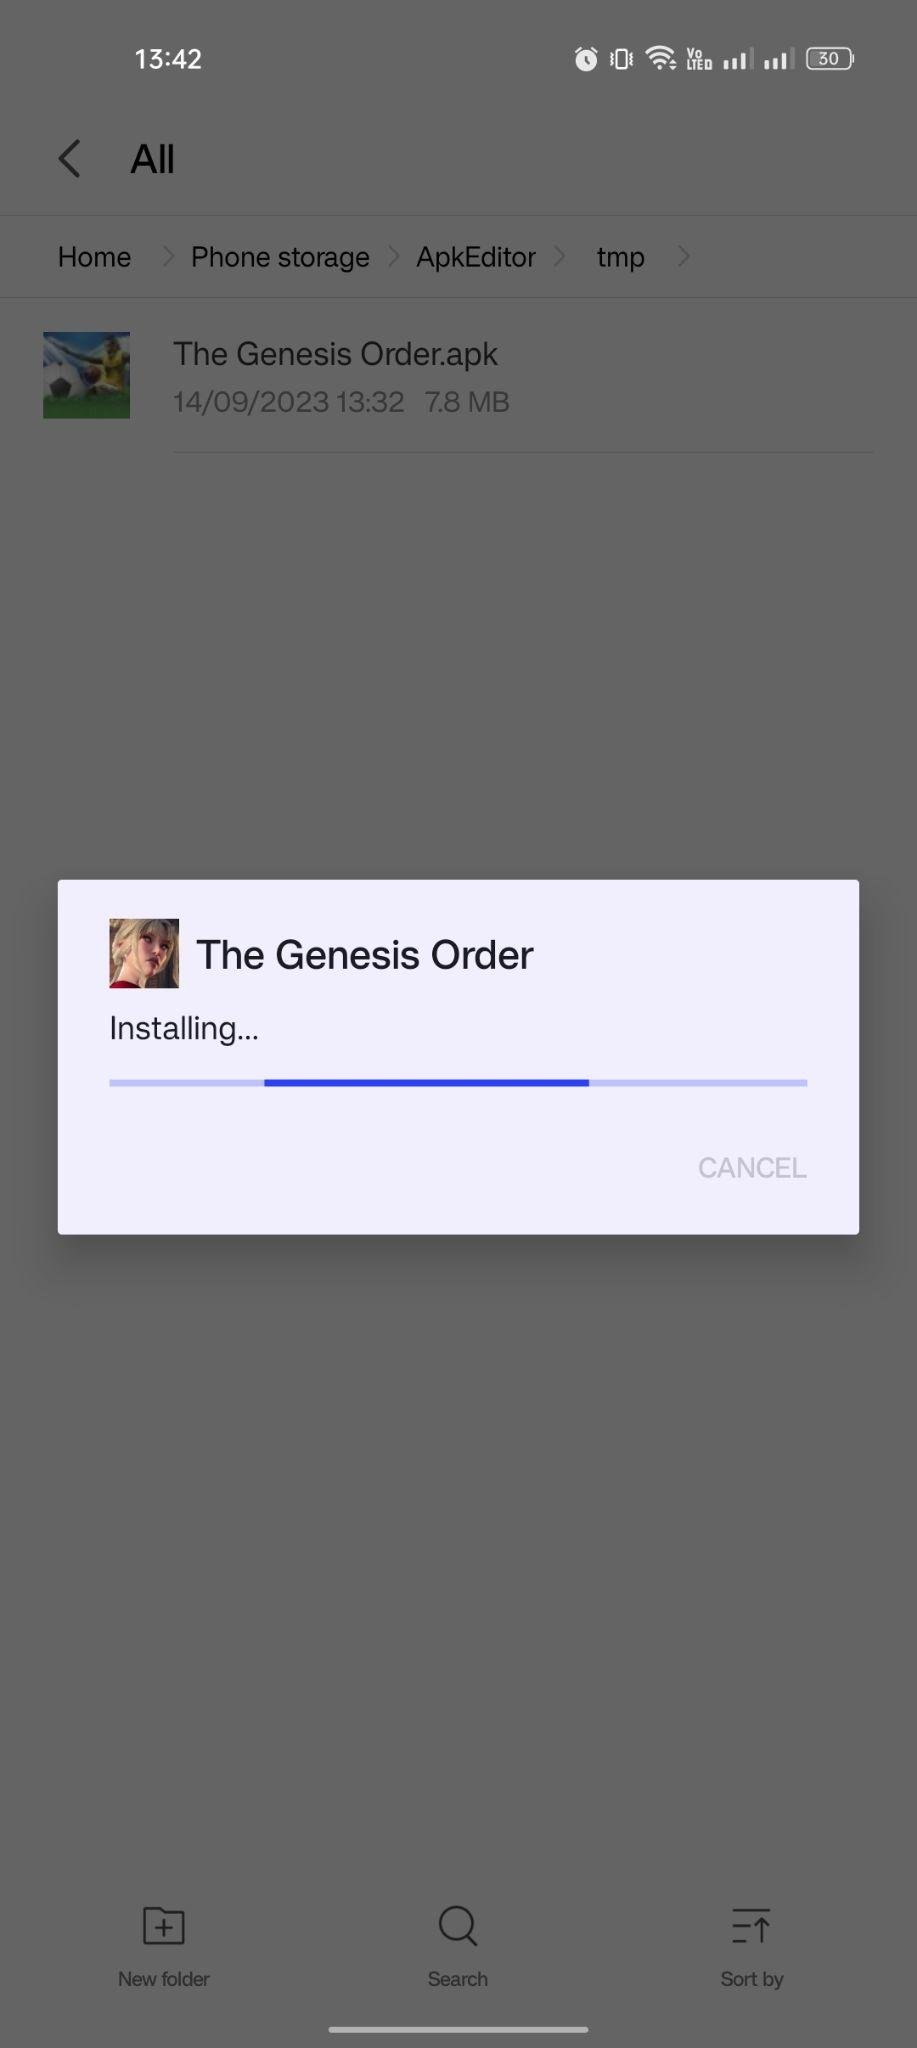 The Genesis Order apk installing